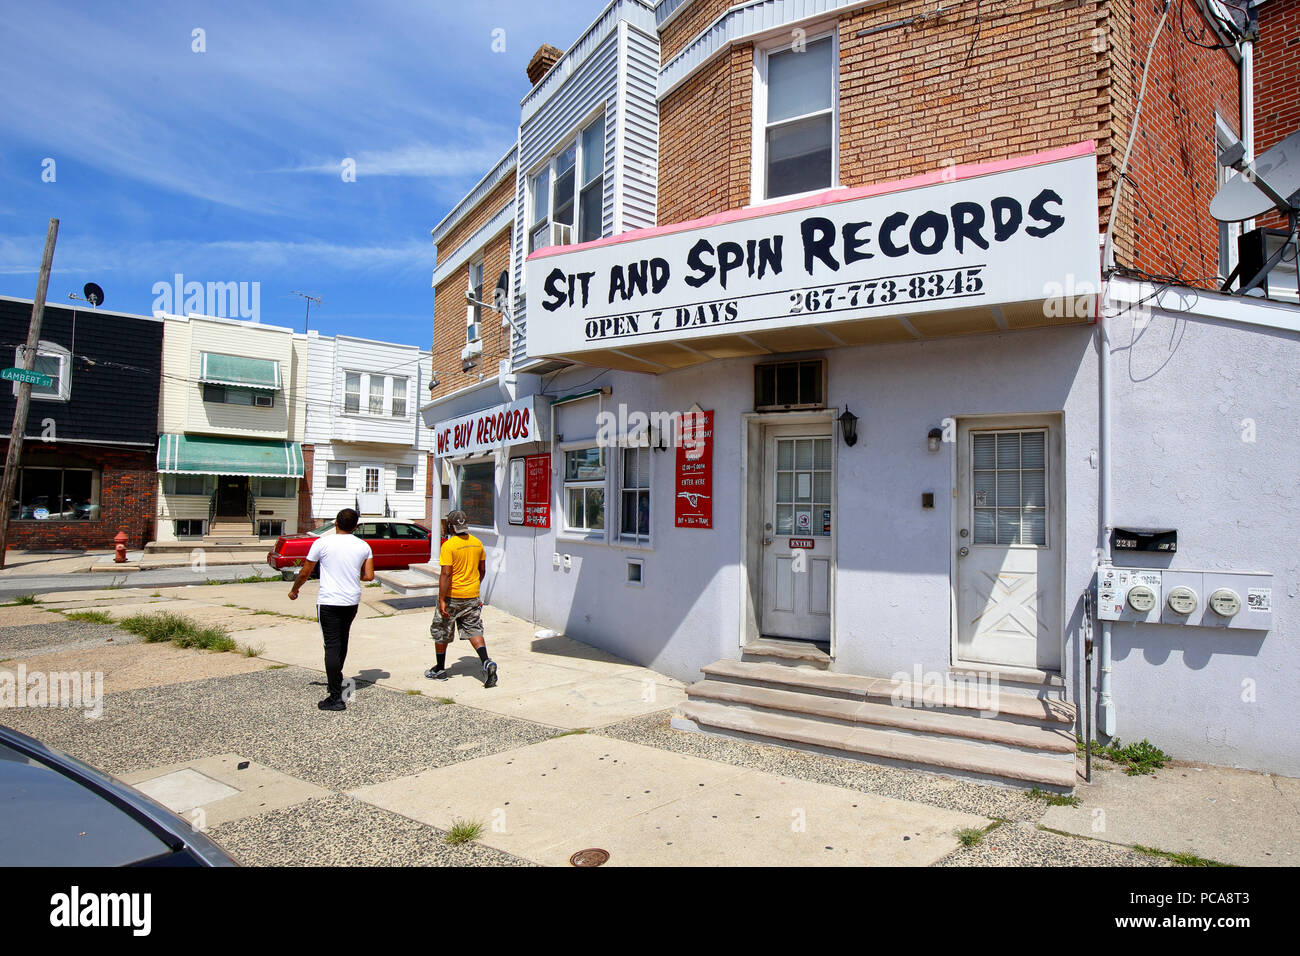 Sedersi e record di spin, 2243 S St Lambert, Philadelphia, PA. esterno alla vetrina di un negozio di dischi in west passyunk. Foto Stock